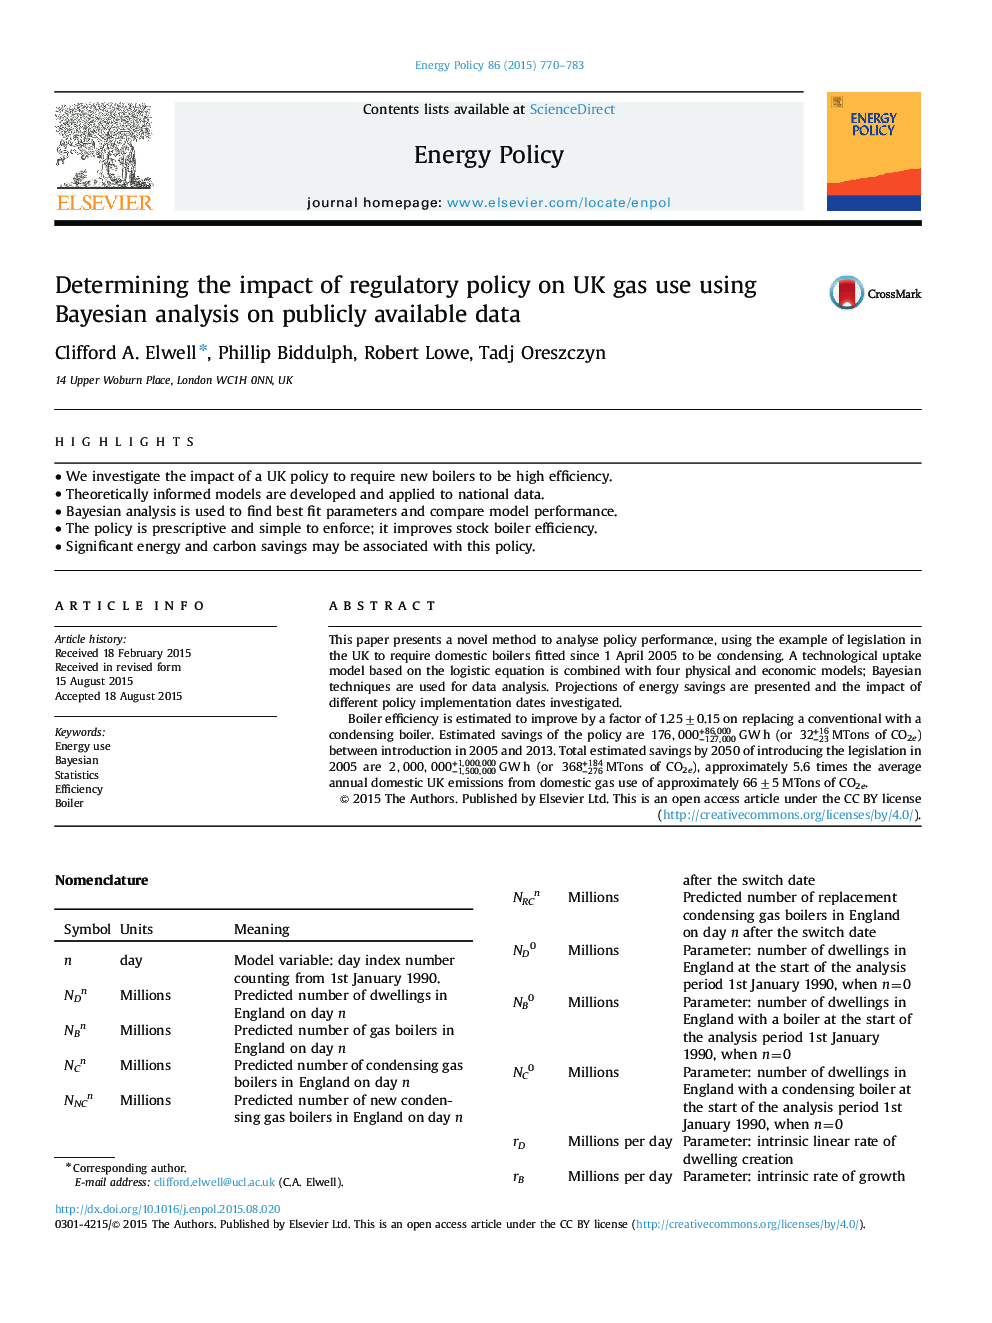 تعیین تاثیر سیاست های نظارتی بر مصرف گاز بریتانیا با استفاده از تجزیه و تحلیل بیزی برای داده های قابل دسترس در دسترس 